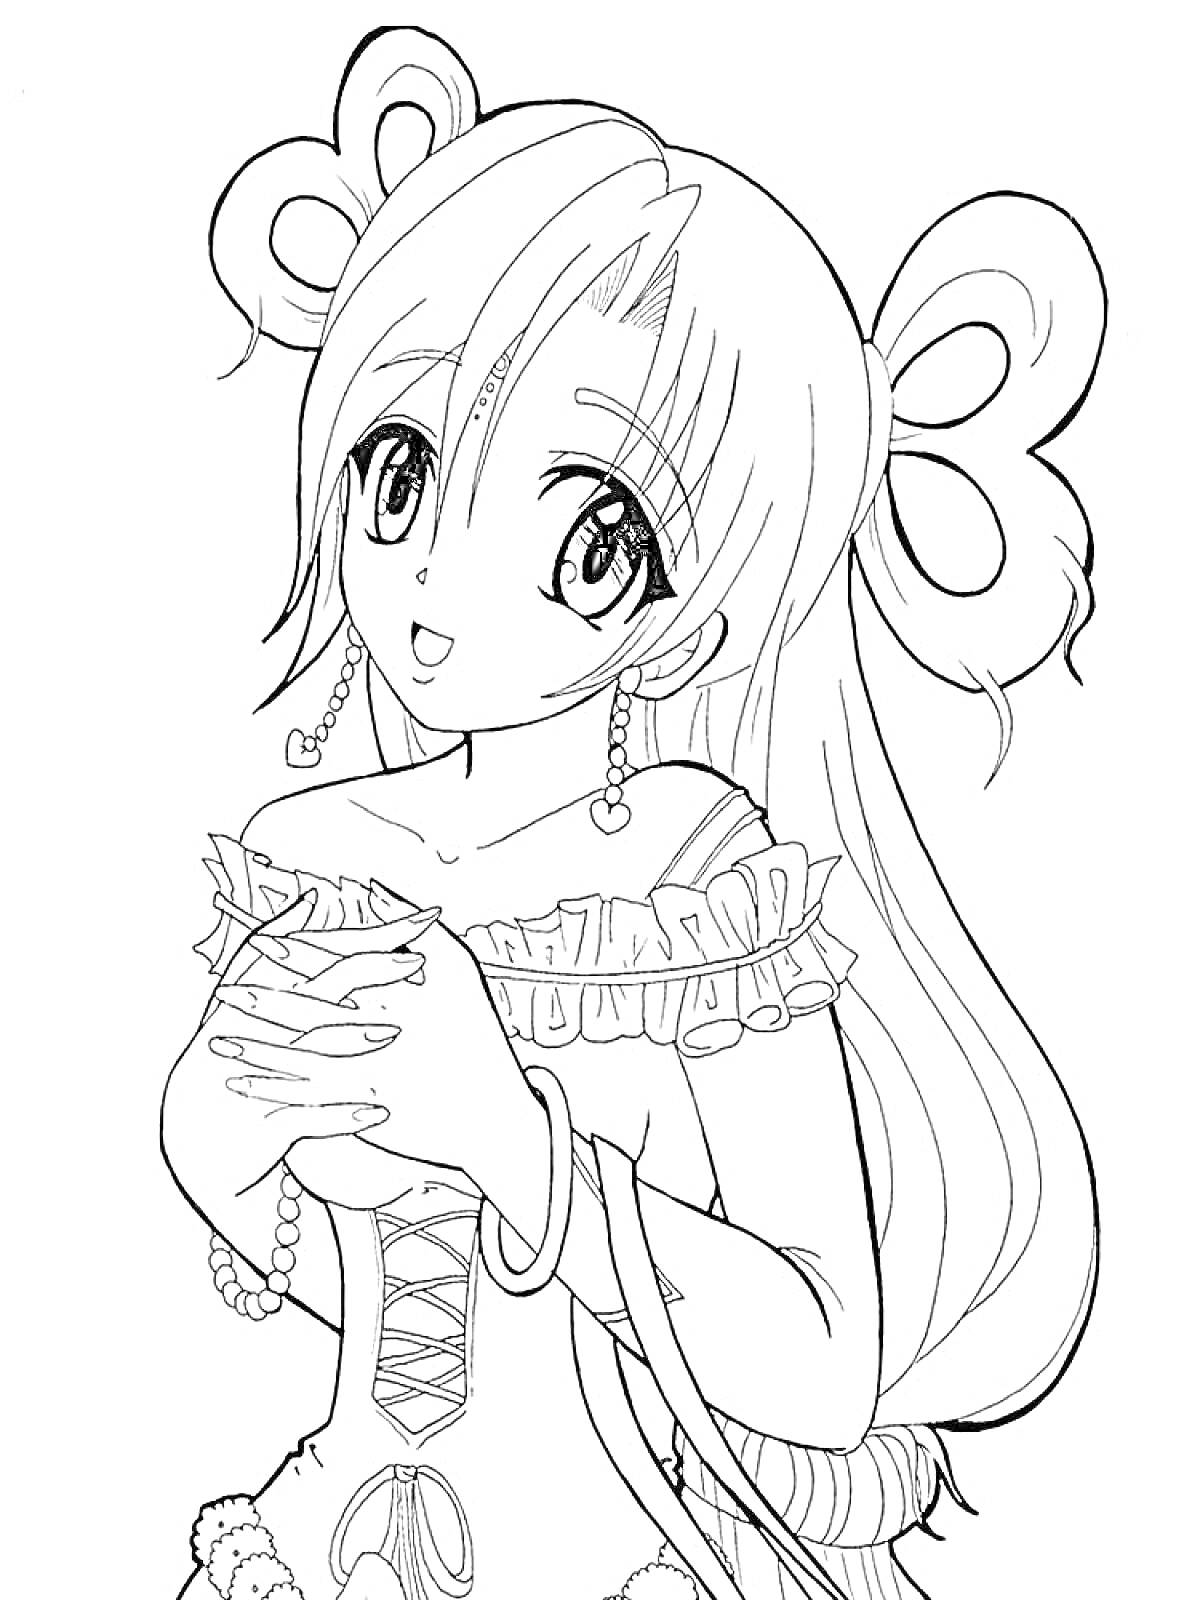 Раскраска Девушка-аниме с длинными волосами и большими бантами, в платье с оборками, украшенная ягодами, с серёжками в виде сердец и браслетами, держащая чашку